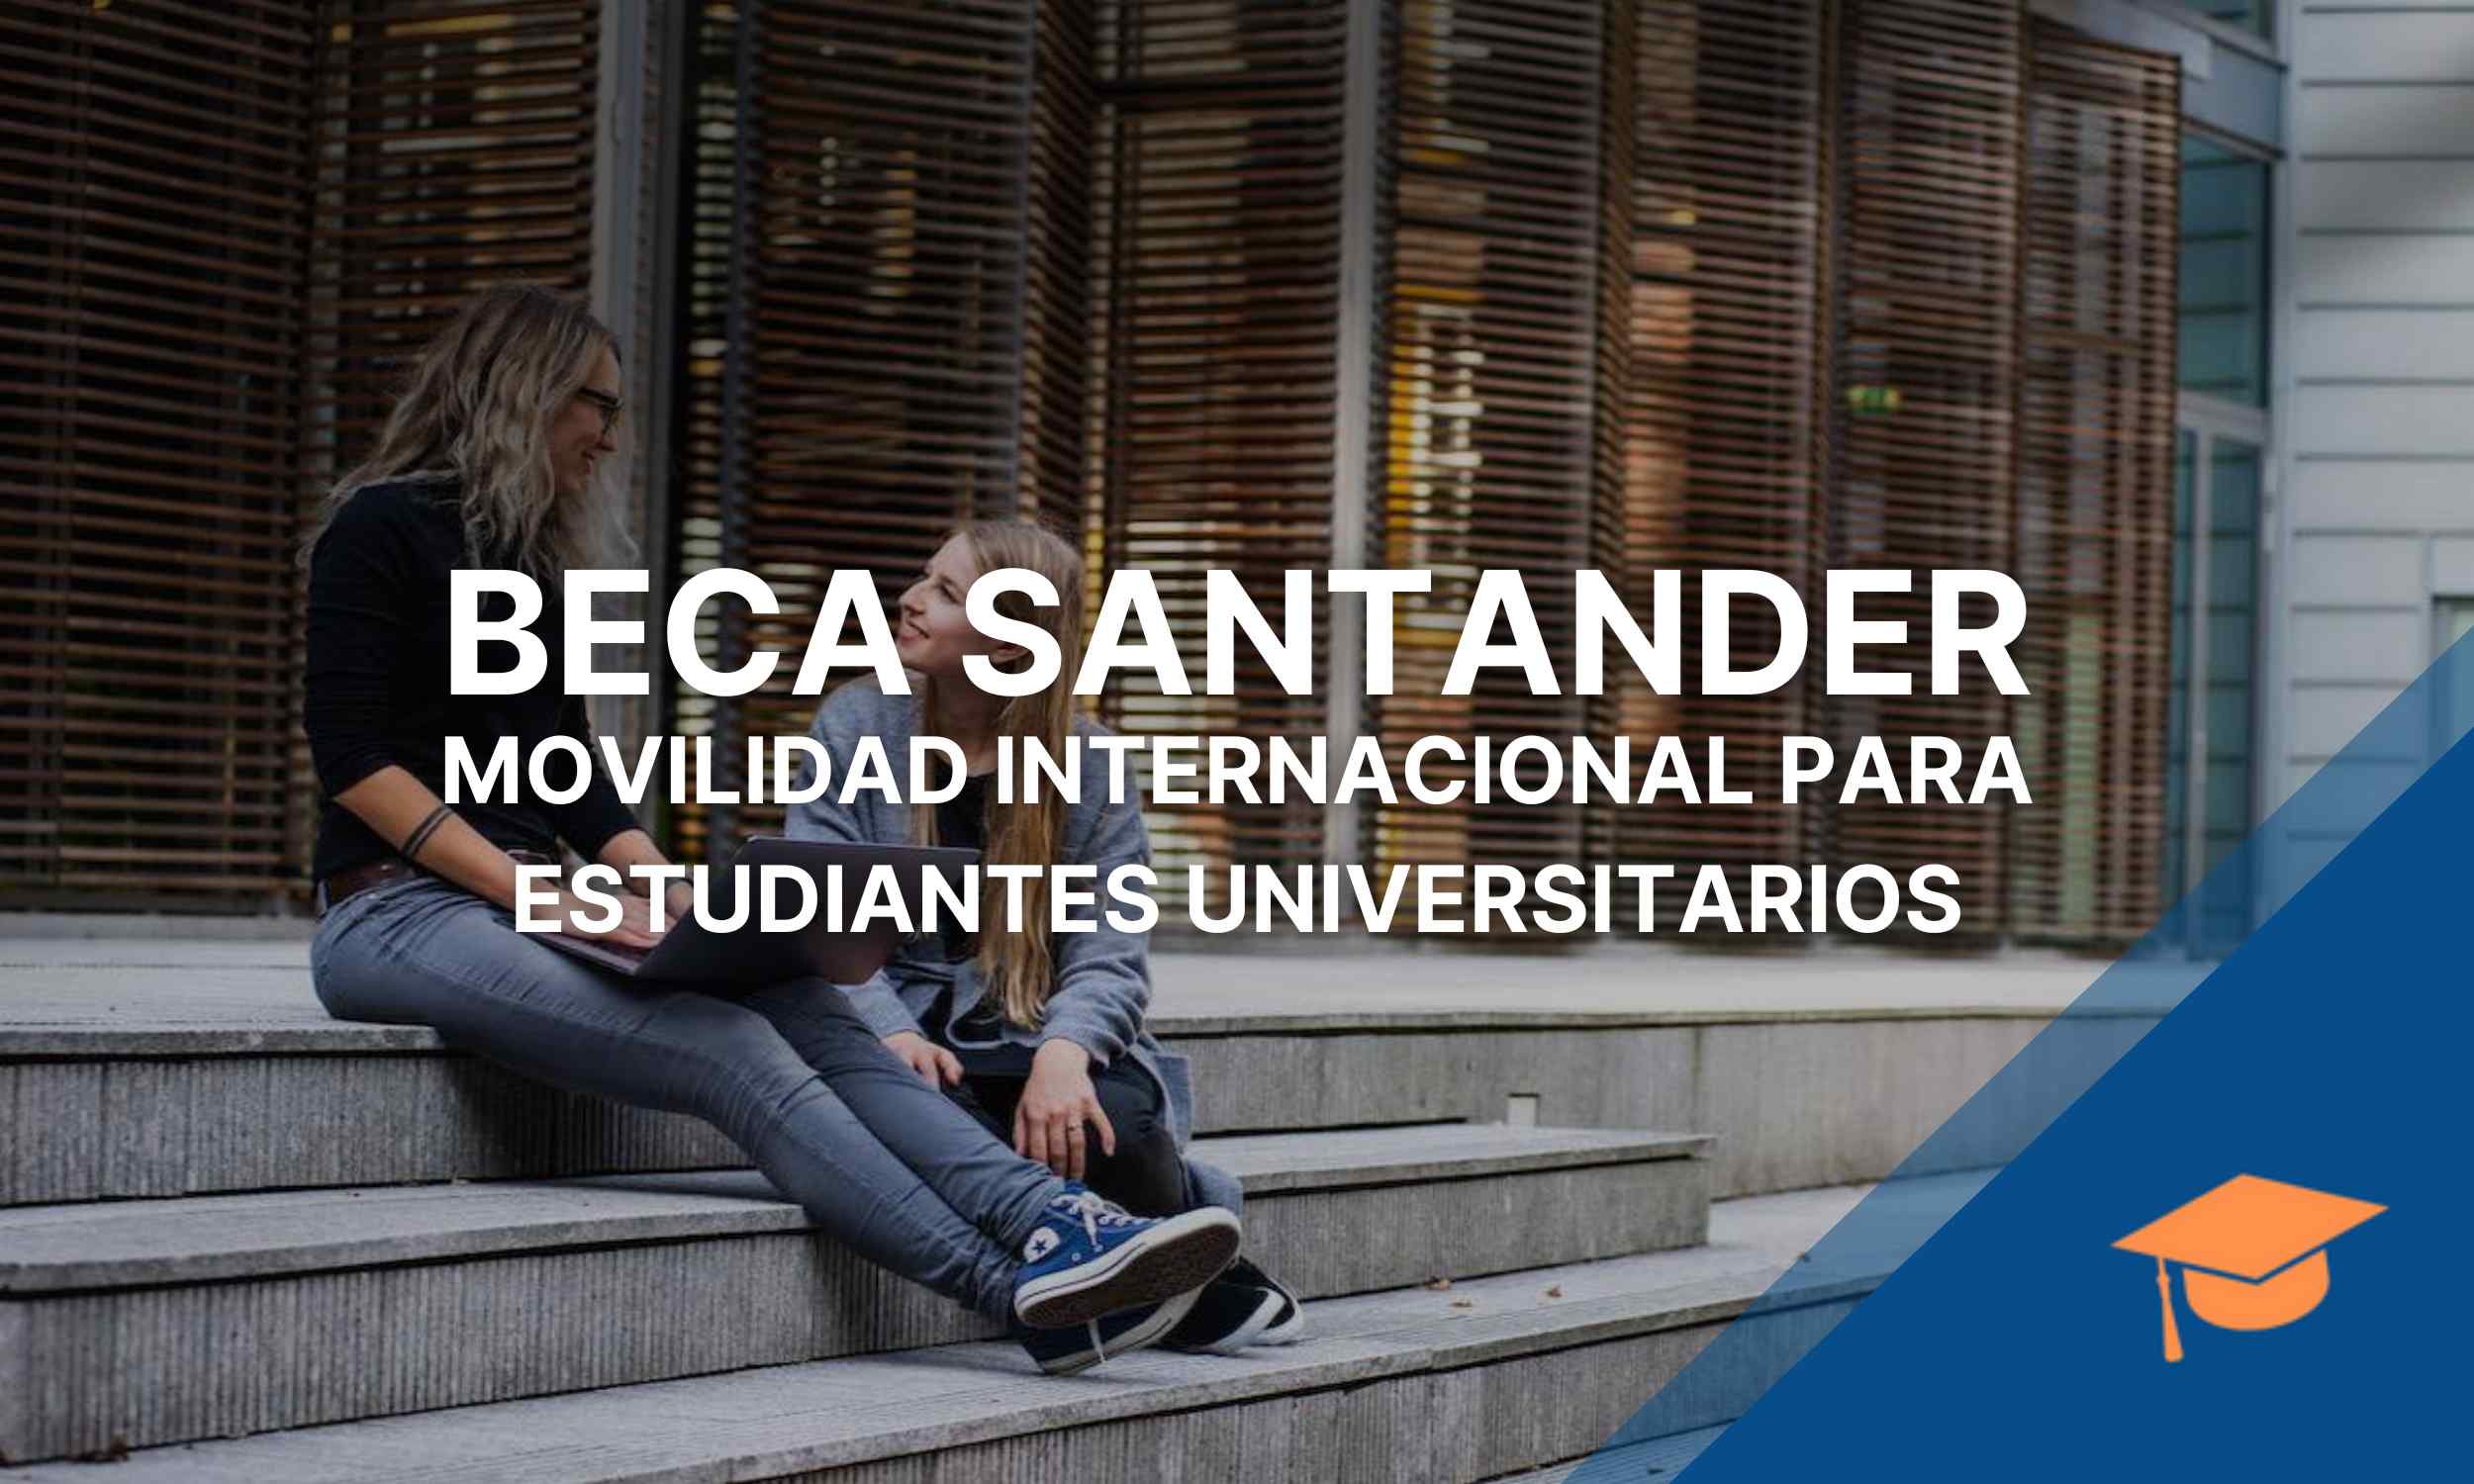 Beca Santander Movilidad internacional para estudiantes universitarios